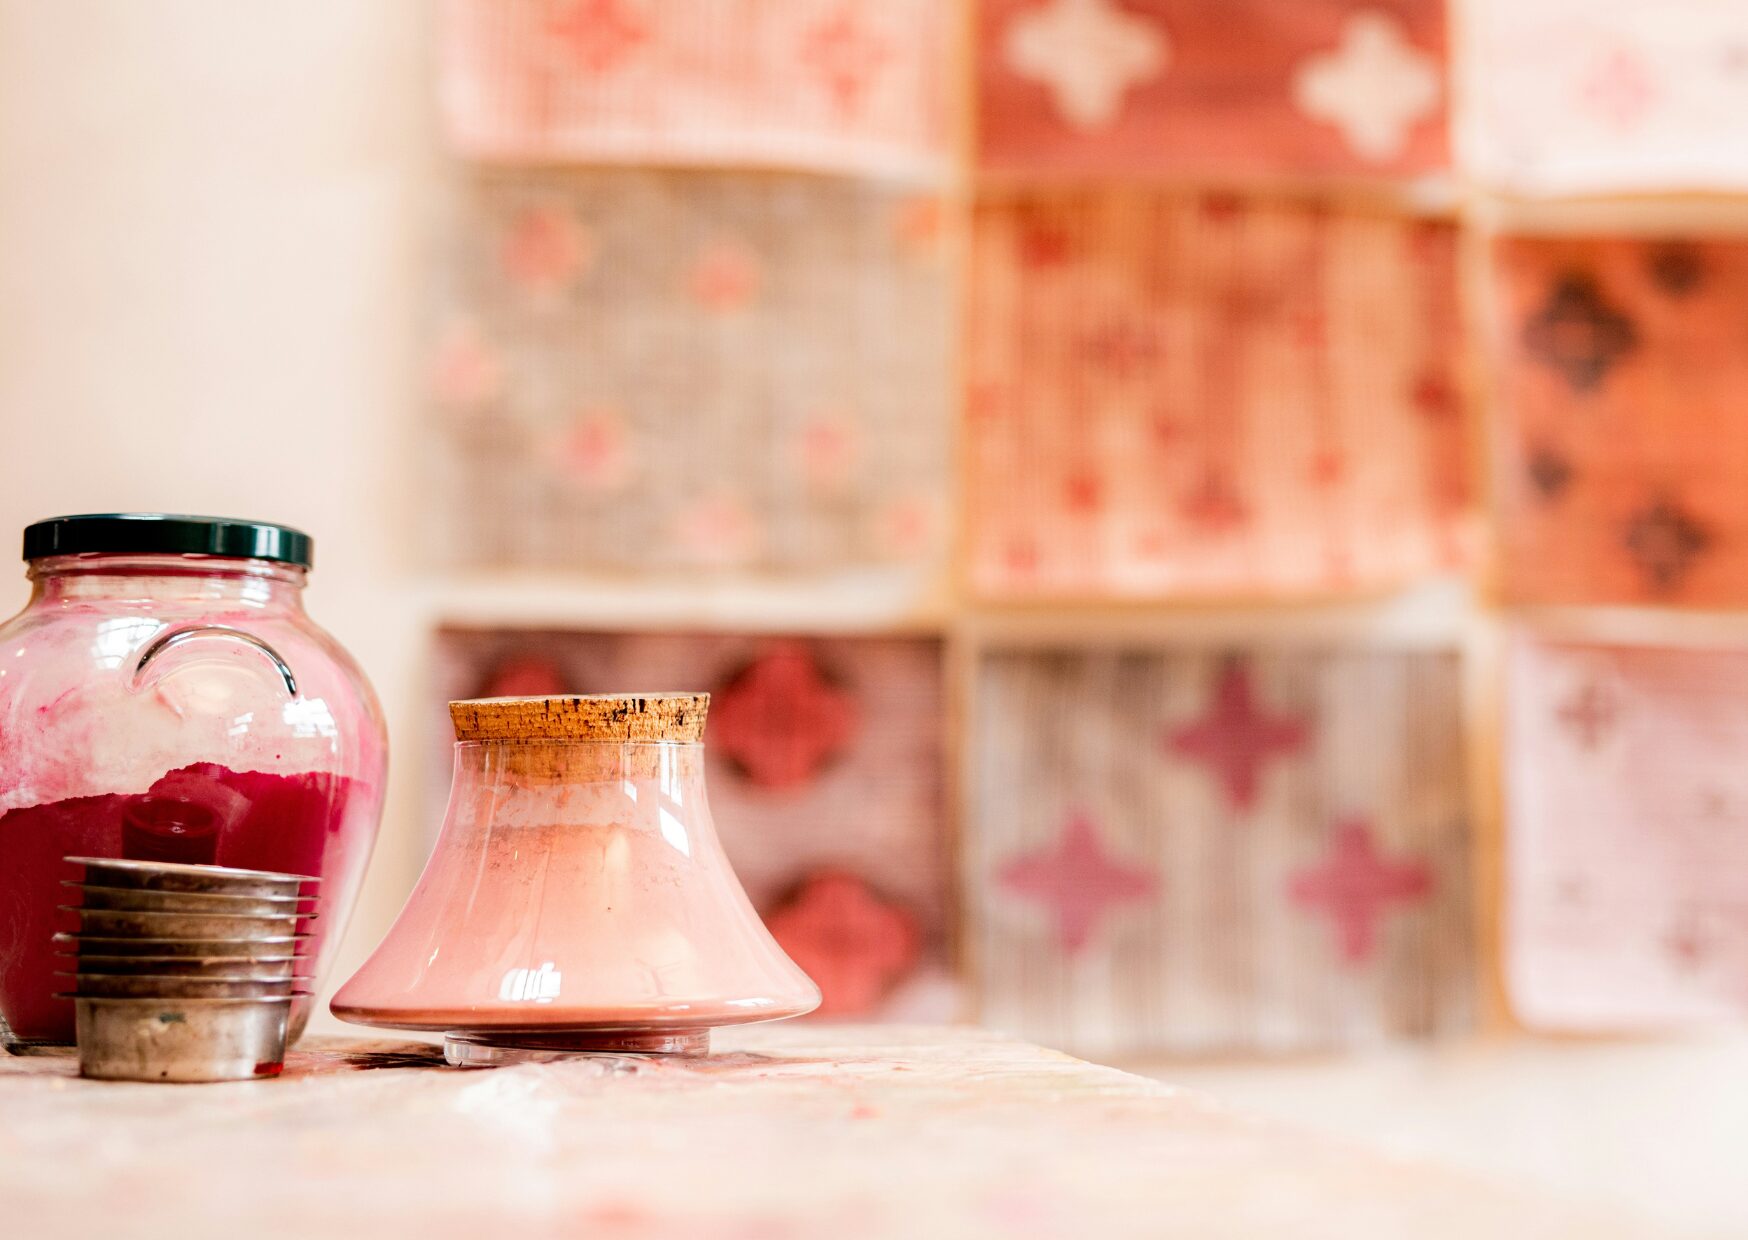 Farbpigmente in verschiedenen Rosetönen ind verkorkten Glasbehältern. An der Wand hängen Kunstwerke. Warum ist Kreativität wichtig?